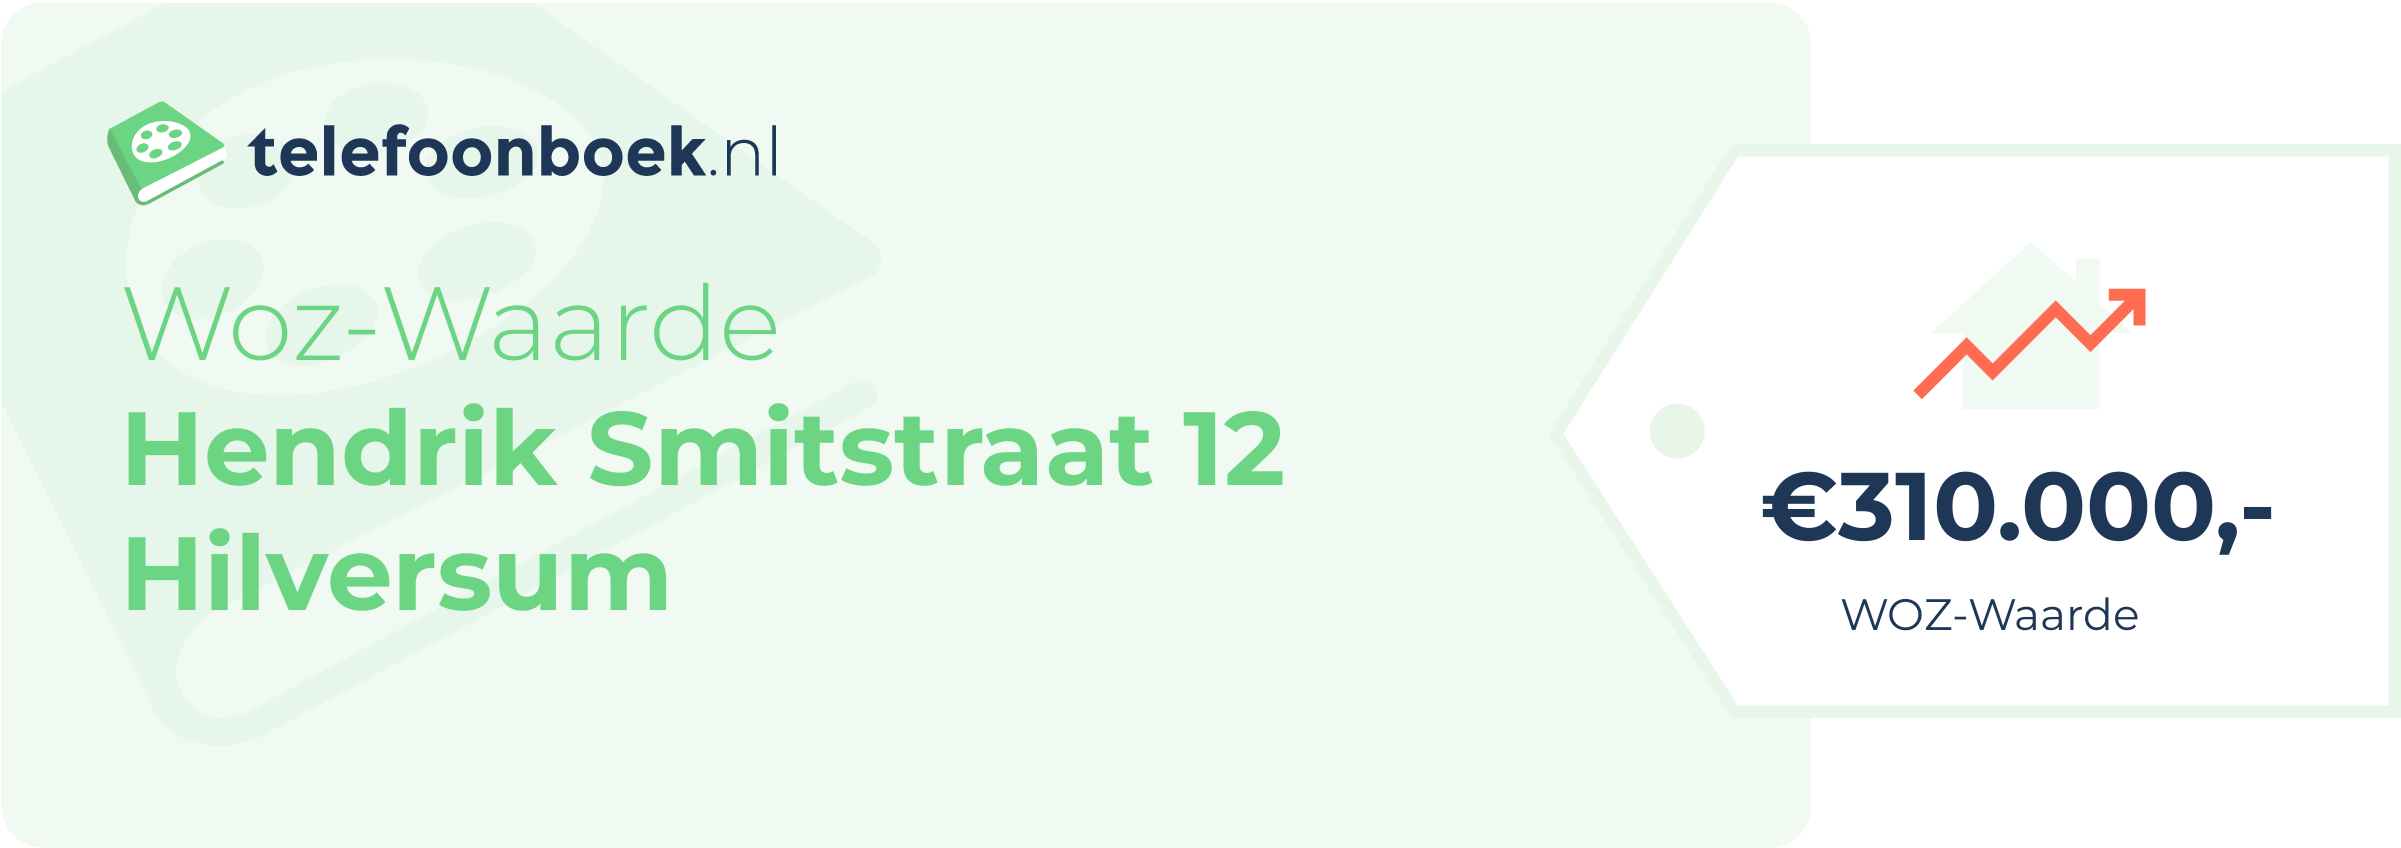 WOZ-waarde Hendrik Smitstraat 12 Hilversum